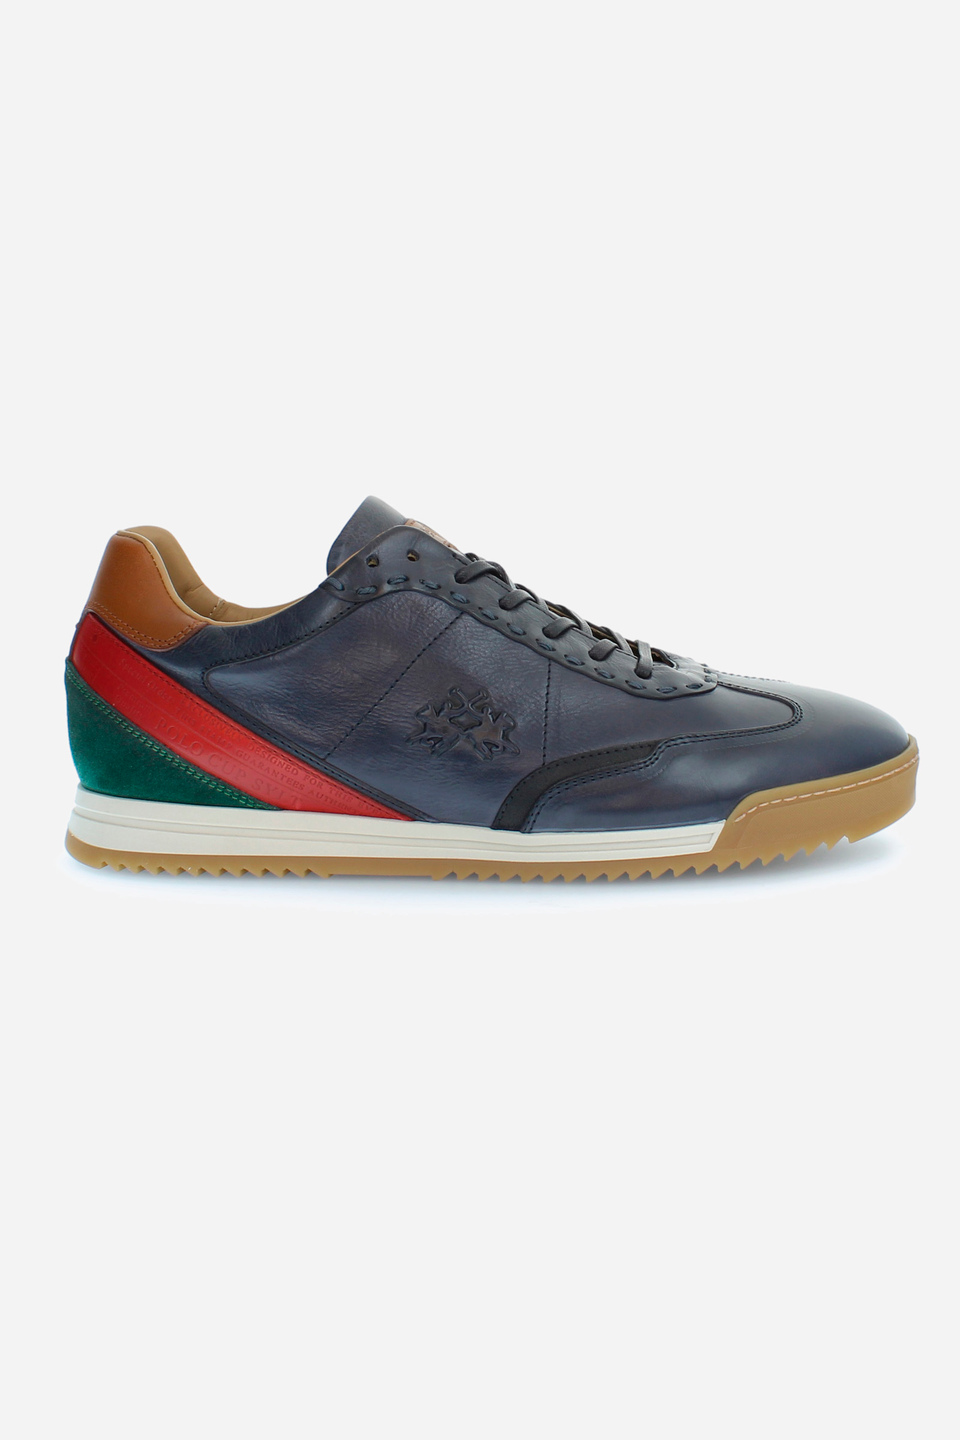 Klassischer Herren-Sneaker aus Leder | La Martina - Official Online Shop